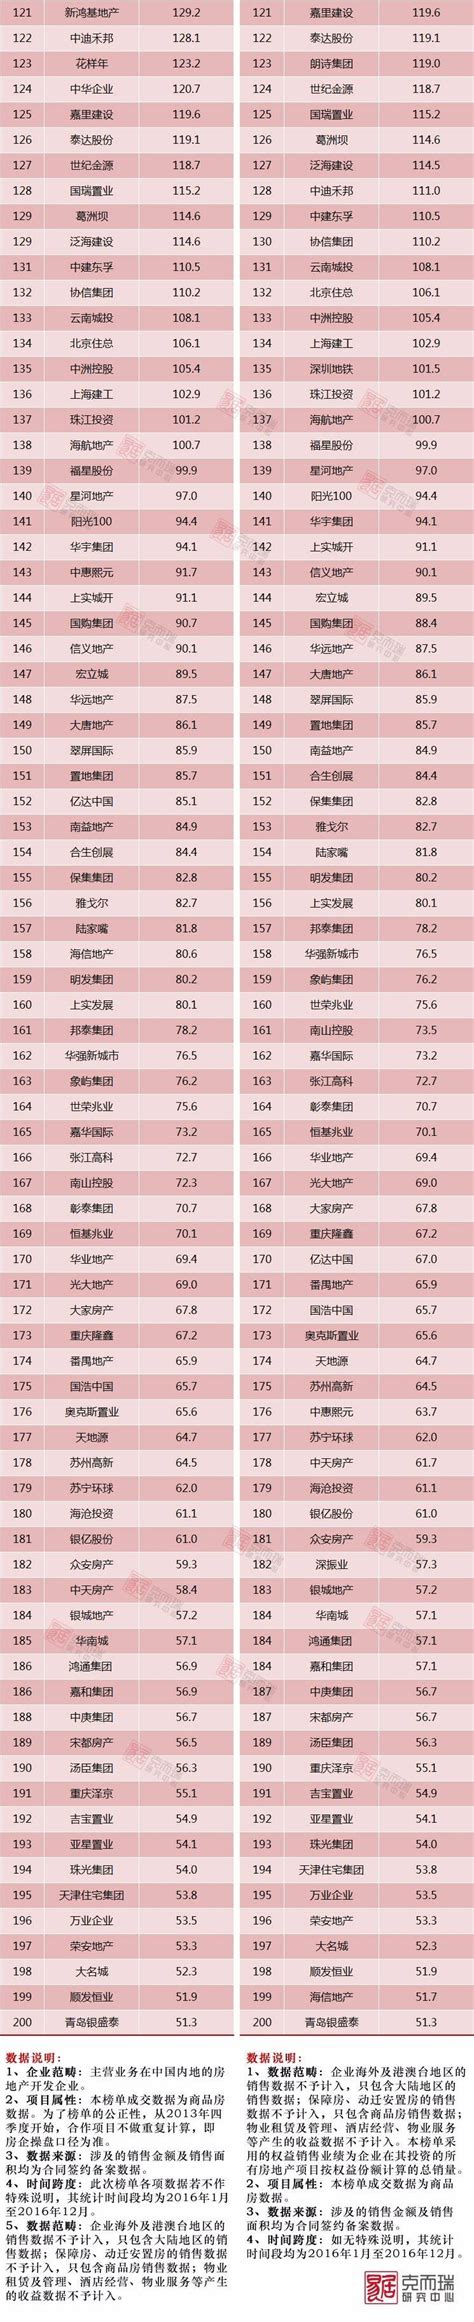 2012年中国房地产企业销售排名50强_word文档在线阅读与下载_免费文档